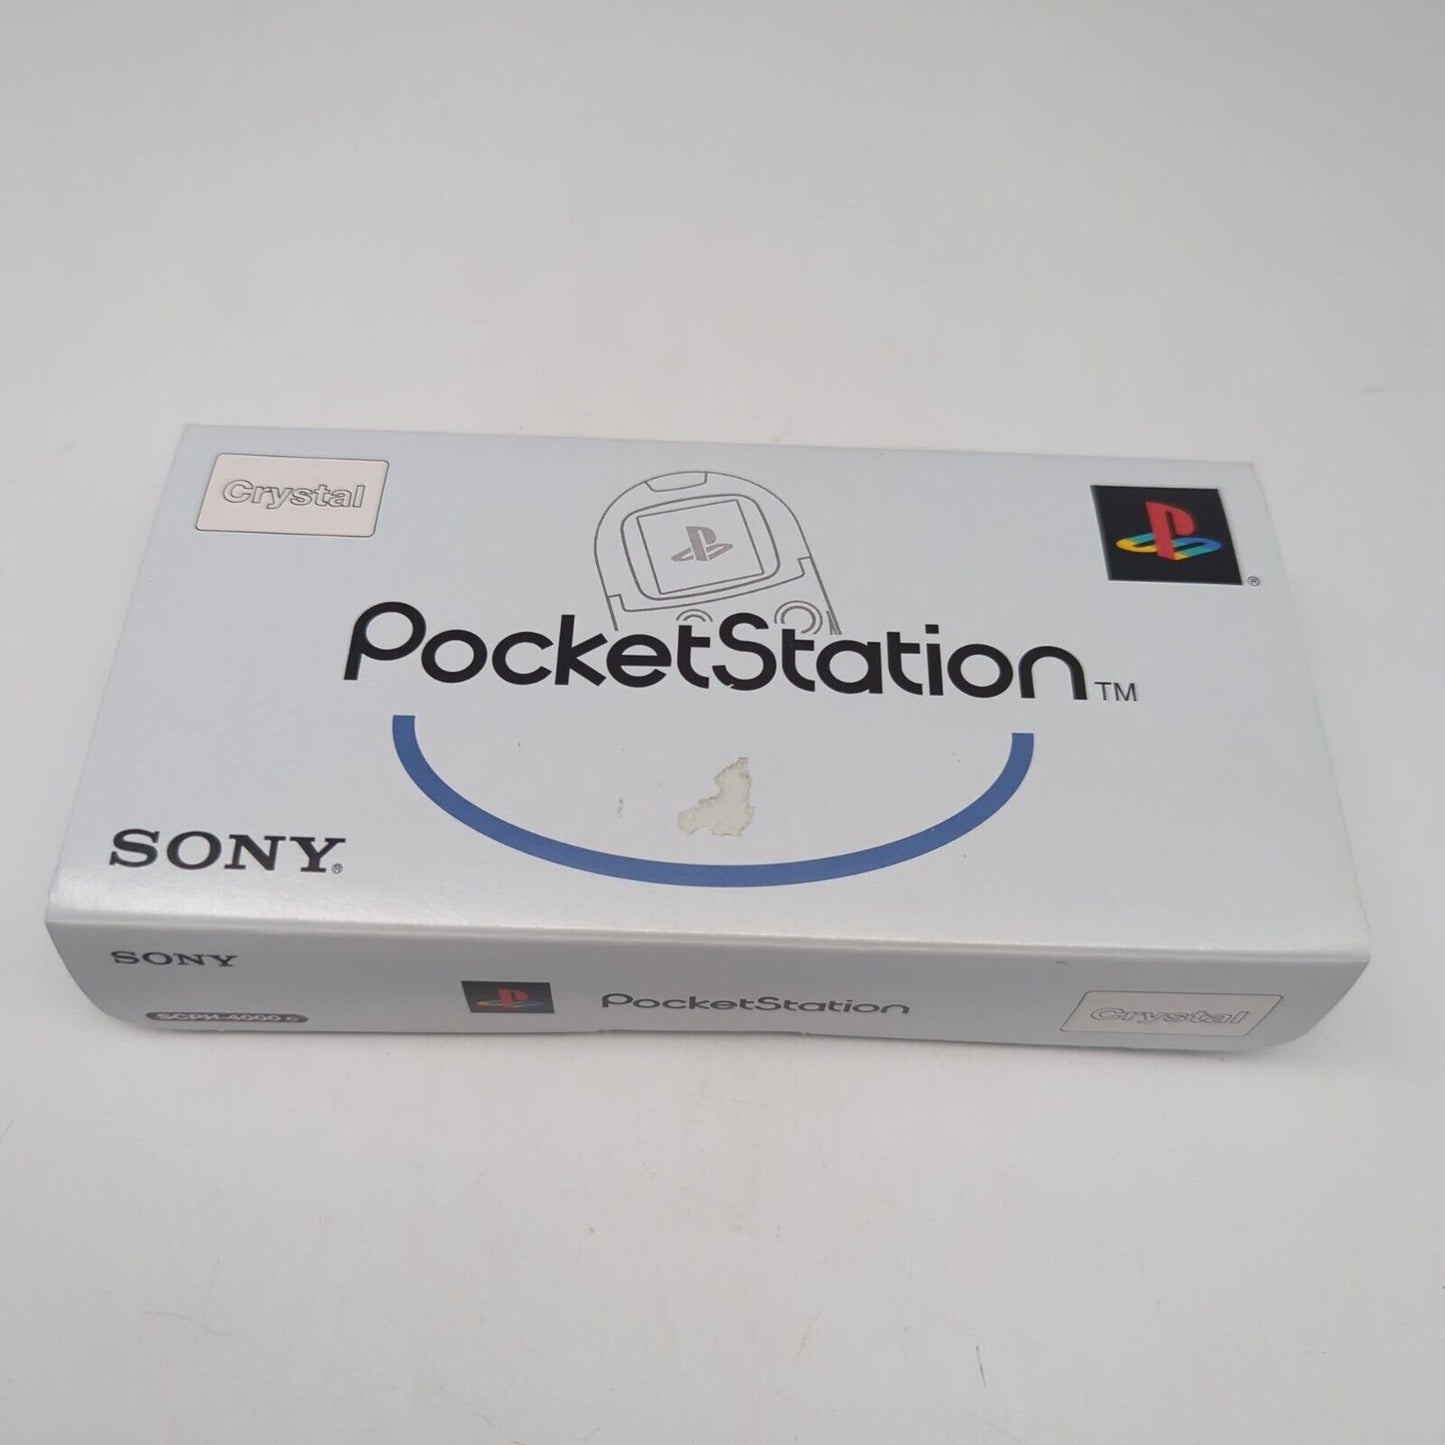 Sony PocketStation poket station playstation 1 Mini Console Clear Japan USED